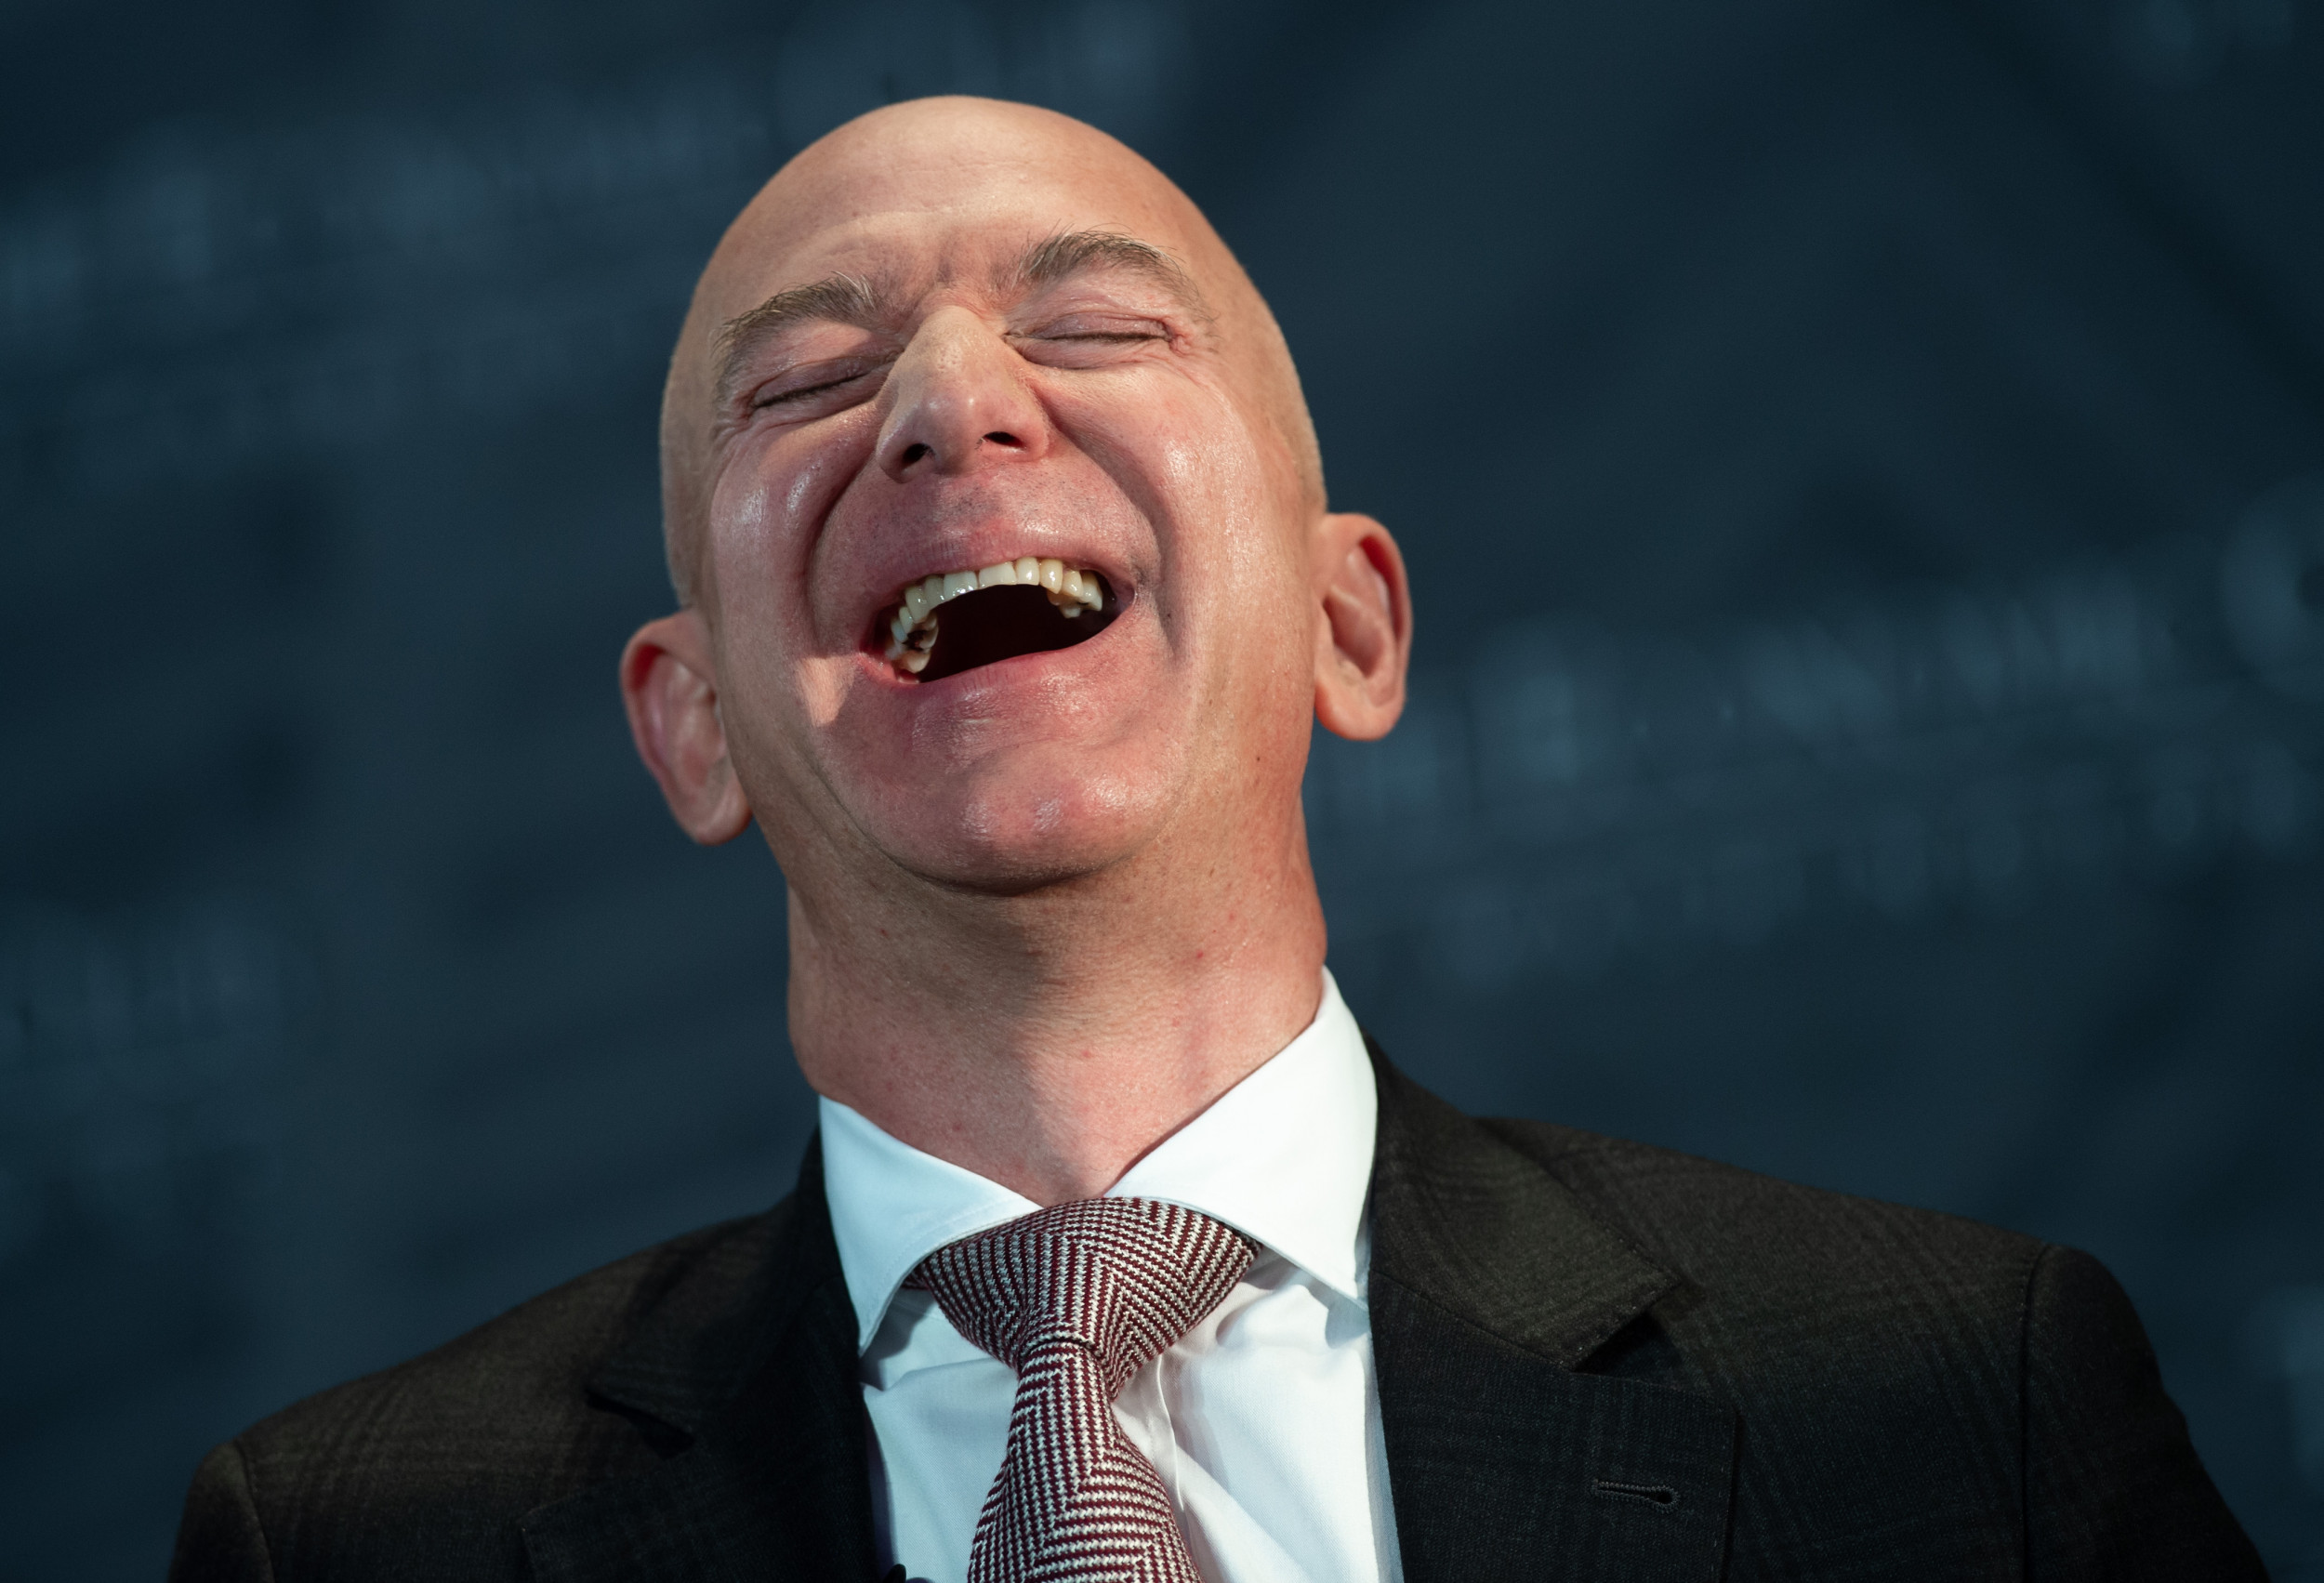 Jeff Bezos teste la nouvelle liberté d'expression sur Twitter en... trollant Musk !